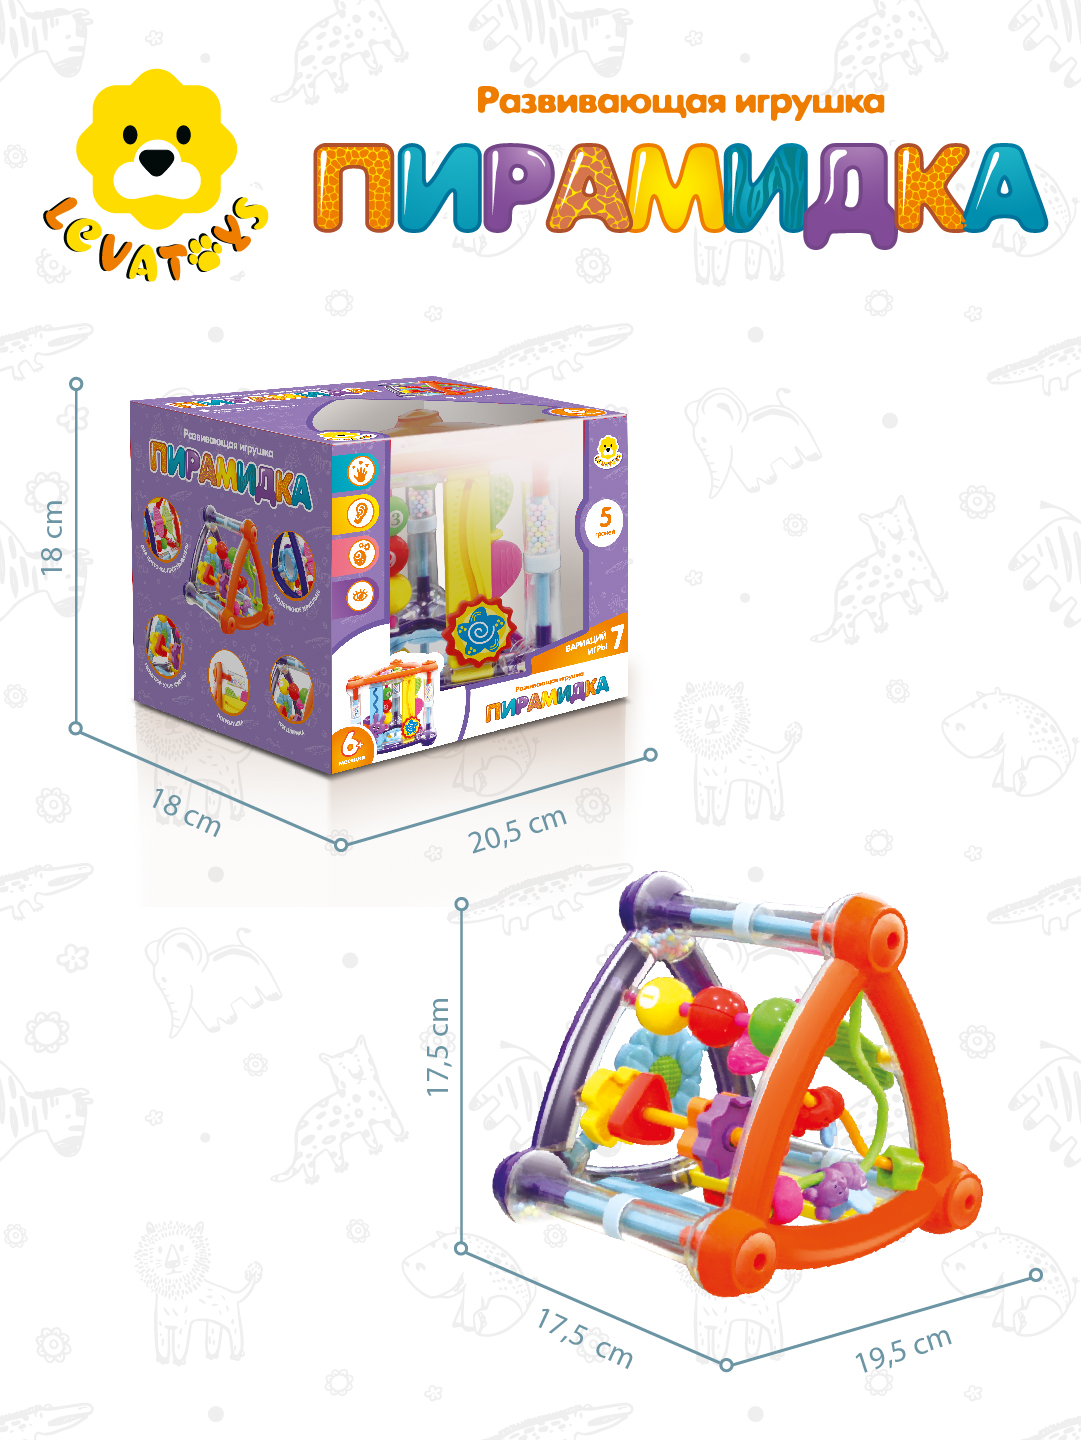 Бизиборд для малышей Levatoys развивающая игрушка Пирамидка 5 игровых зон - фото 5